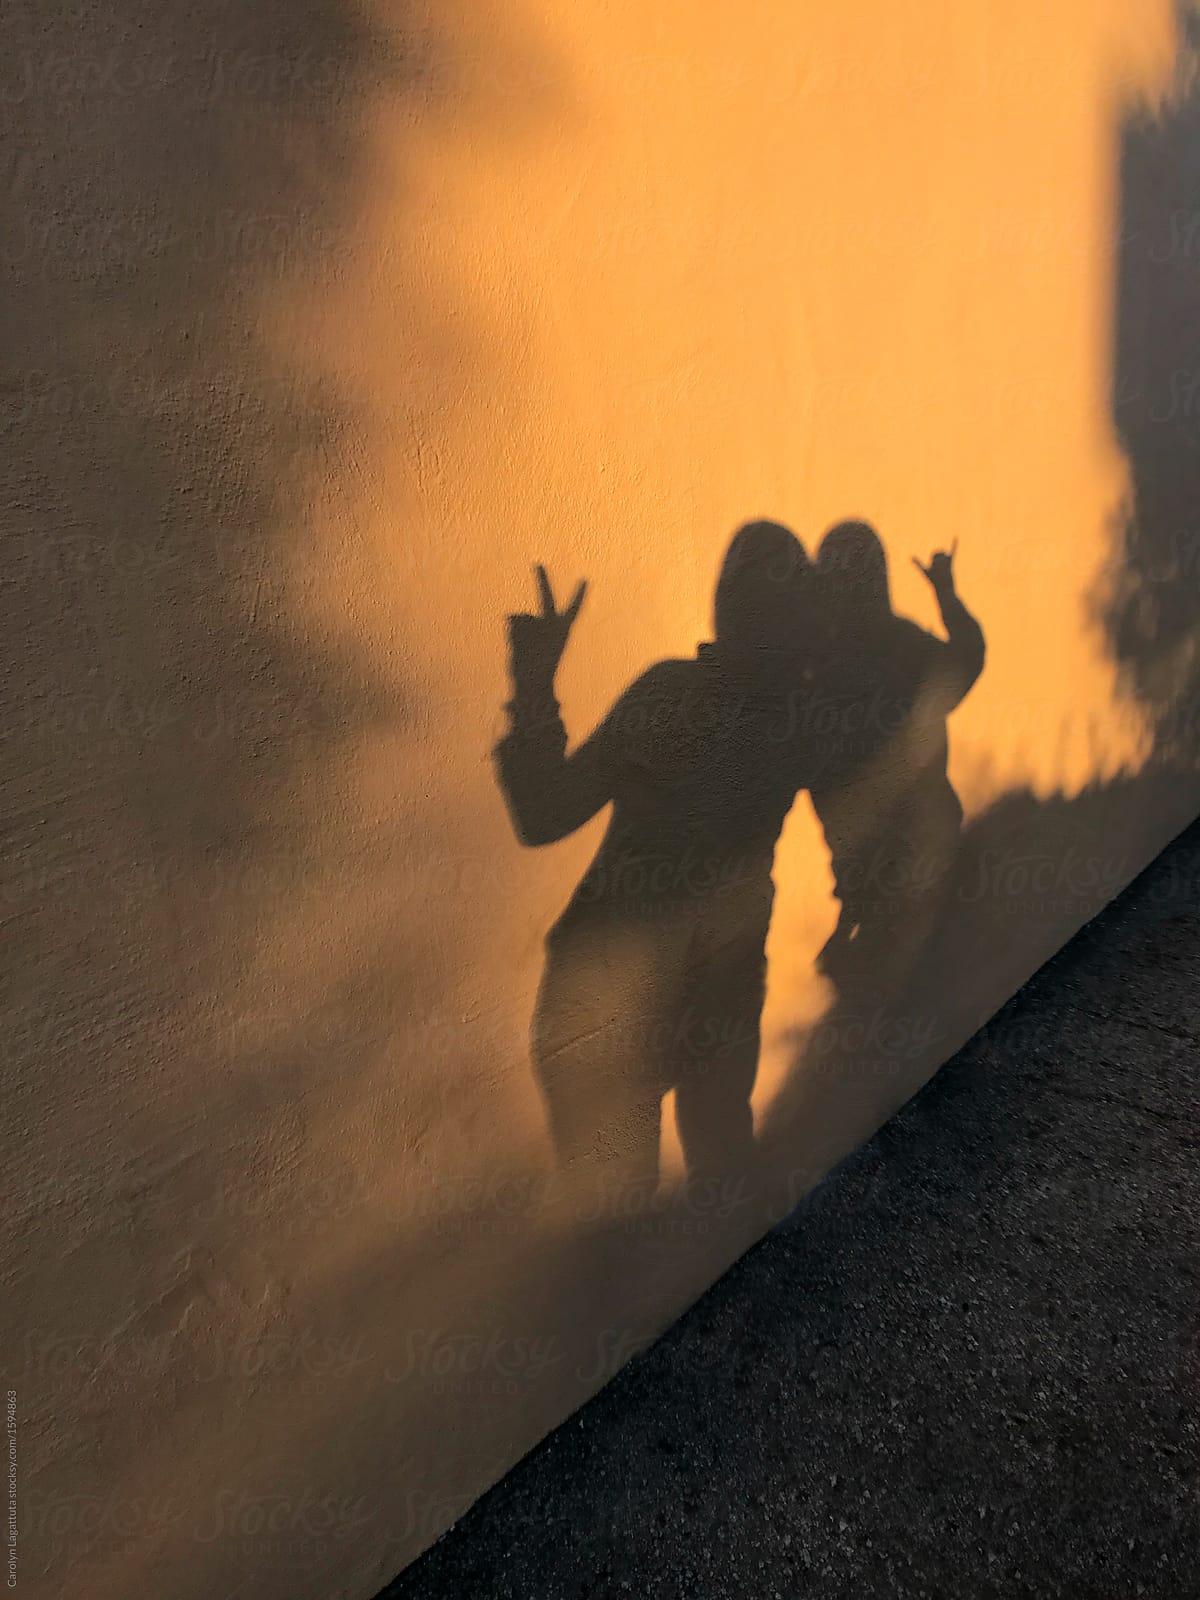 Shadows of two friends on a wall at dusk by Carolyn Lagattuta, Shadow